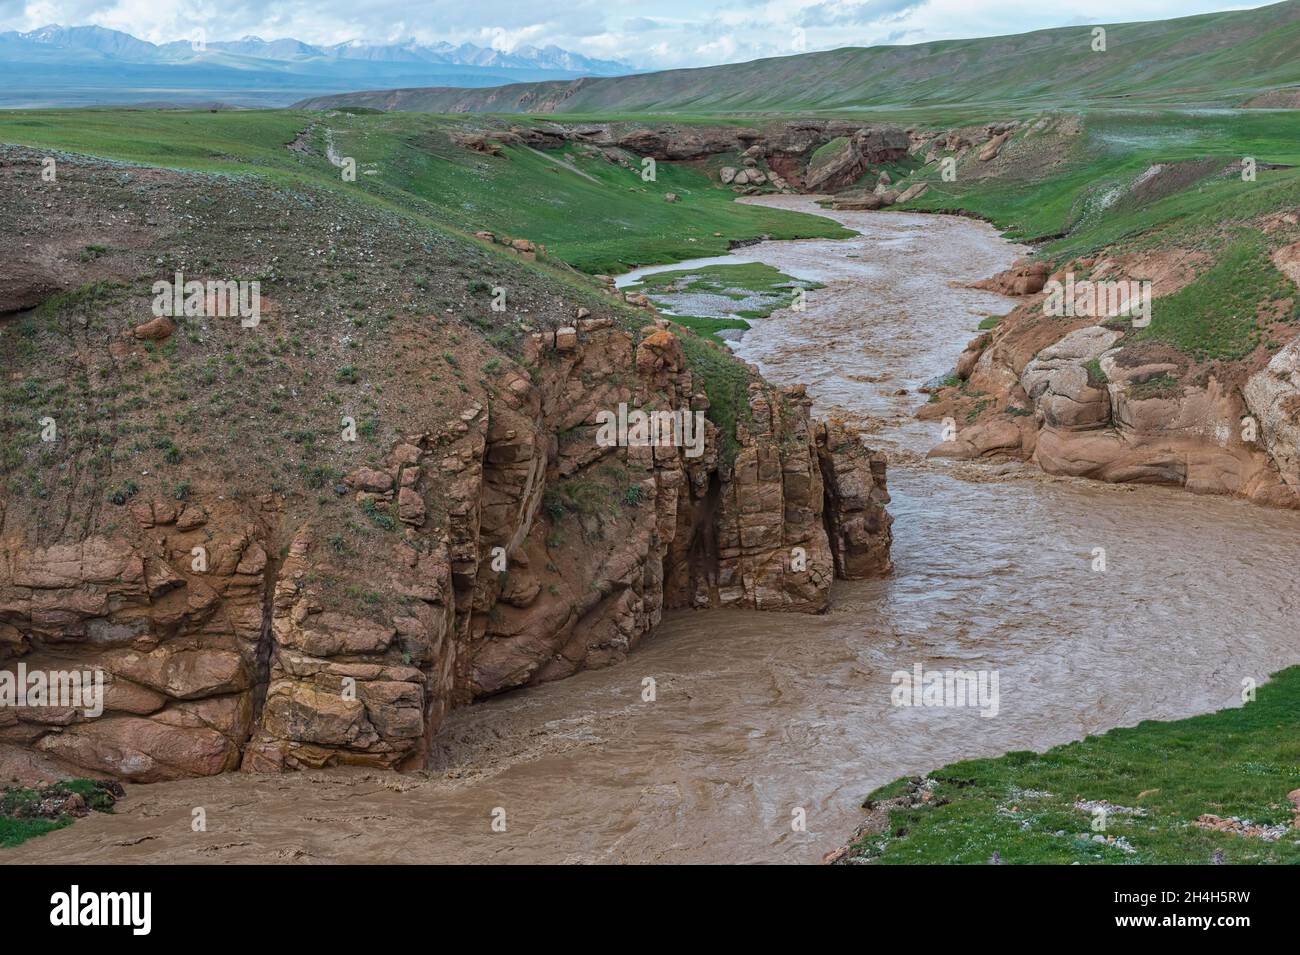 Rivière de montagne boueuse qui traverse une gorge sauvage, province de Naryn, Kirghizistan Banque D'Images